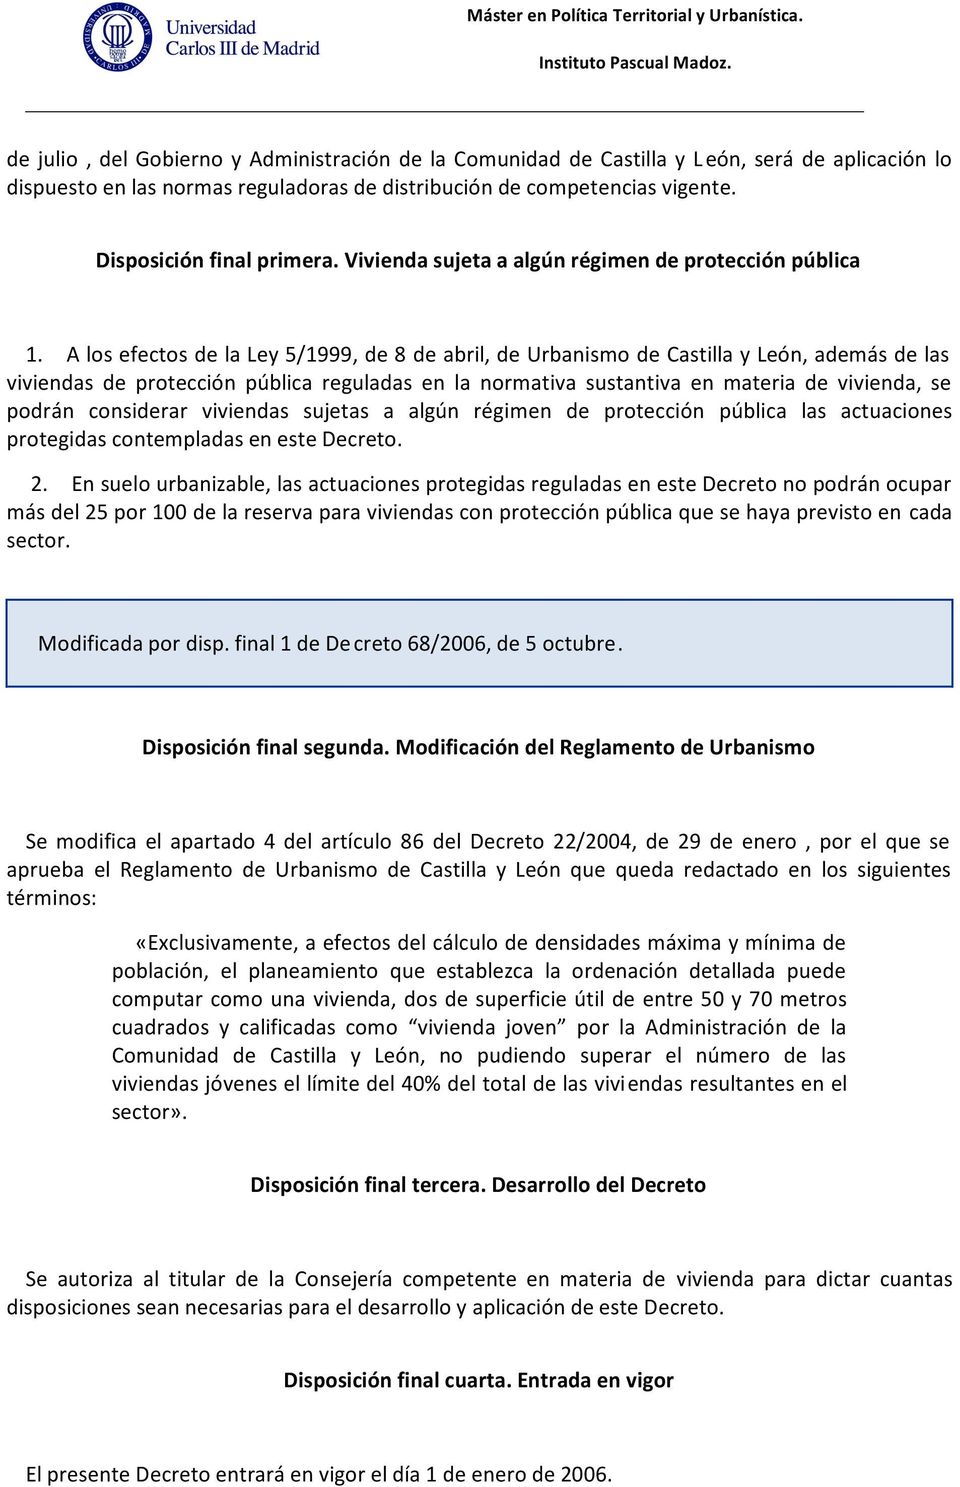 A los efectos de la Ley 5/1999, de 8 de abril, de Urbanismo de Castilla y León, además de las viviendas de protección pública reguladas en la normativa sustantiva en materia de vivienda, se podrán